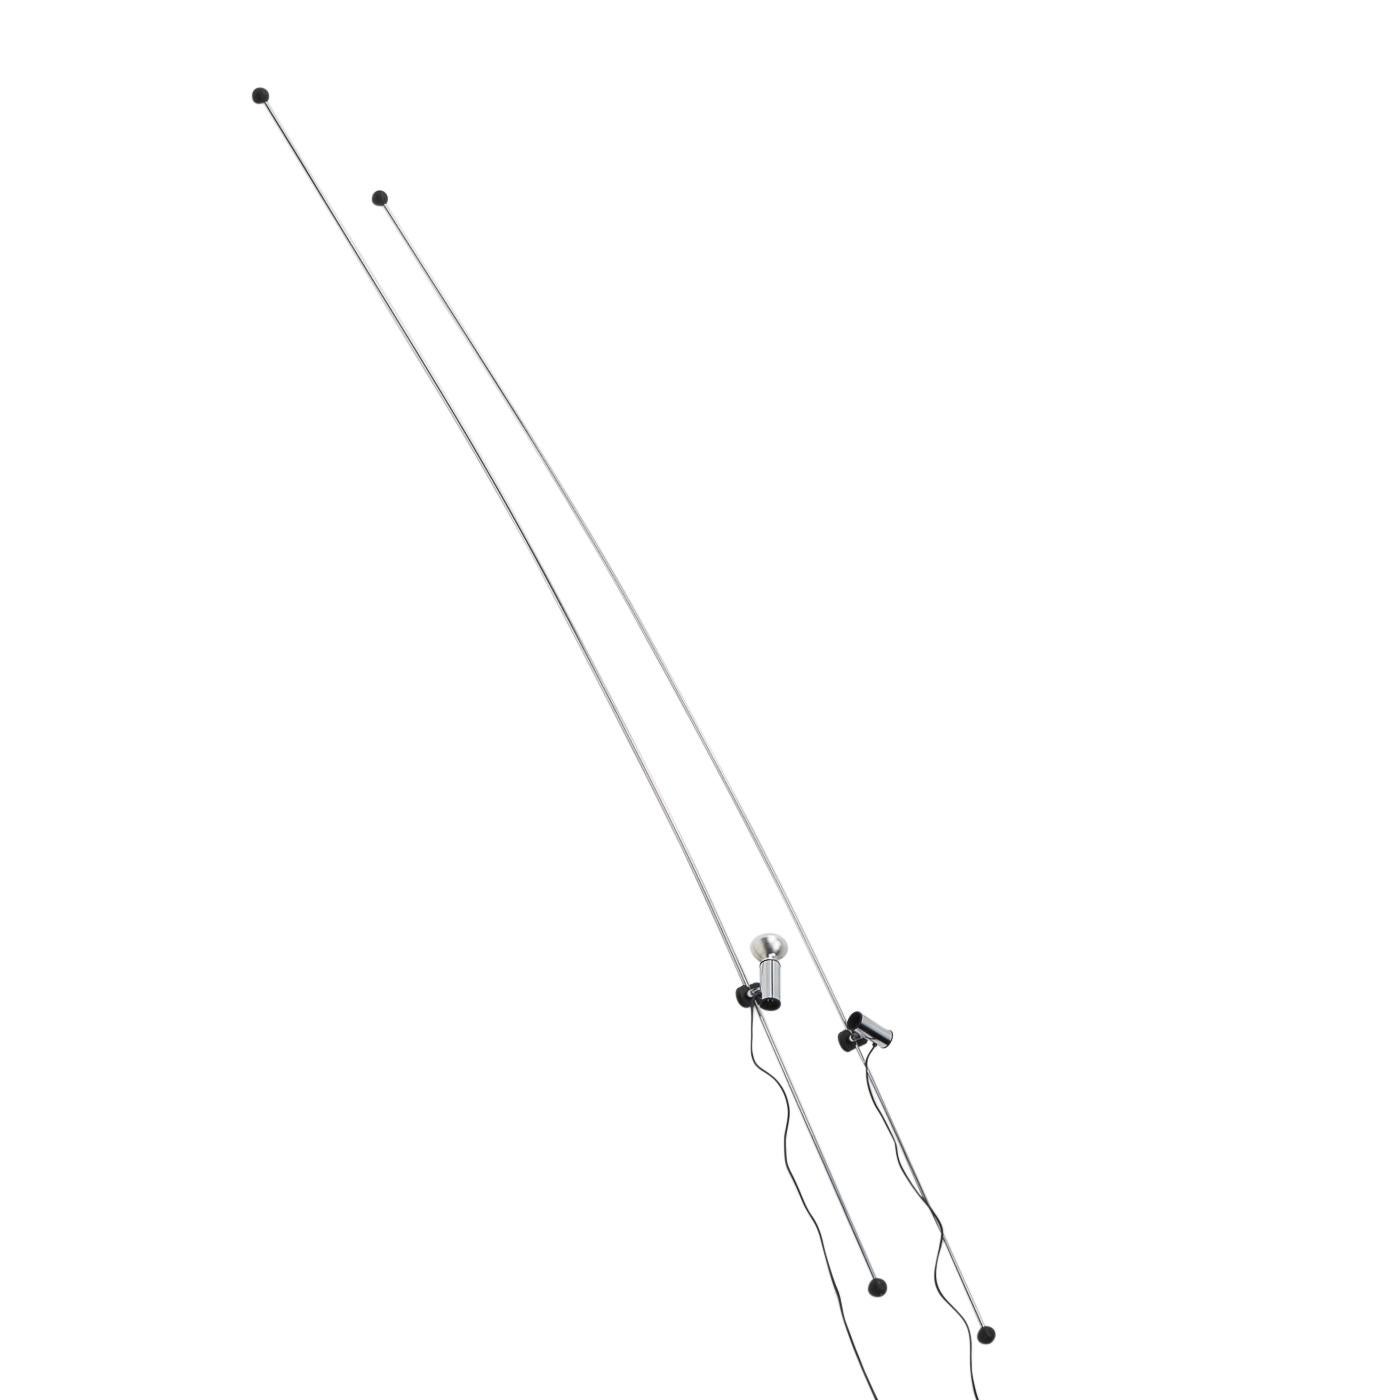 Le lampadaire Molla de Leonardi Cesare, Stagi Franca pour Lumenform est maintenu en place par la tension que procure la tige en acier flexible en la serrant entre le plafond et le sol.

La lampe elle-même est réglable en hauteur et peut tourner